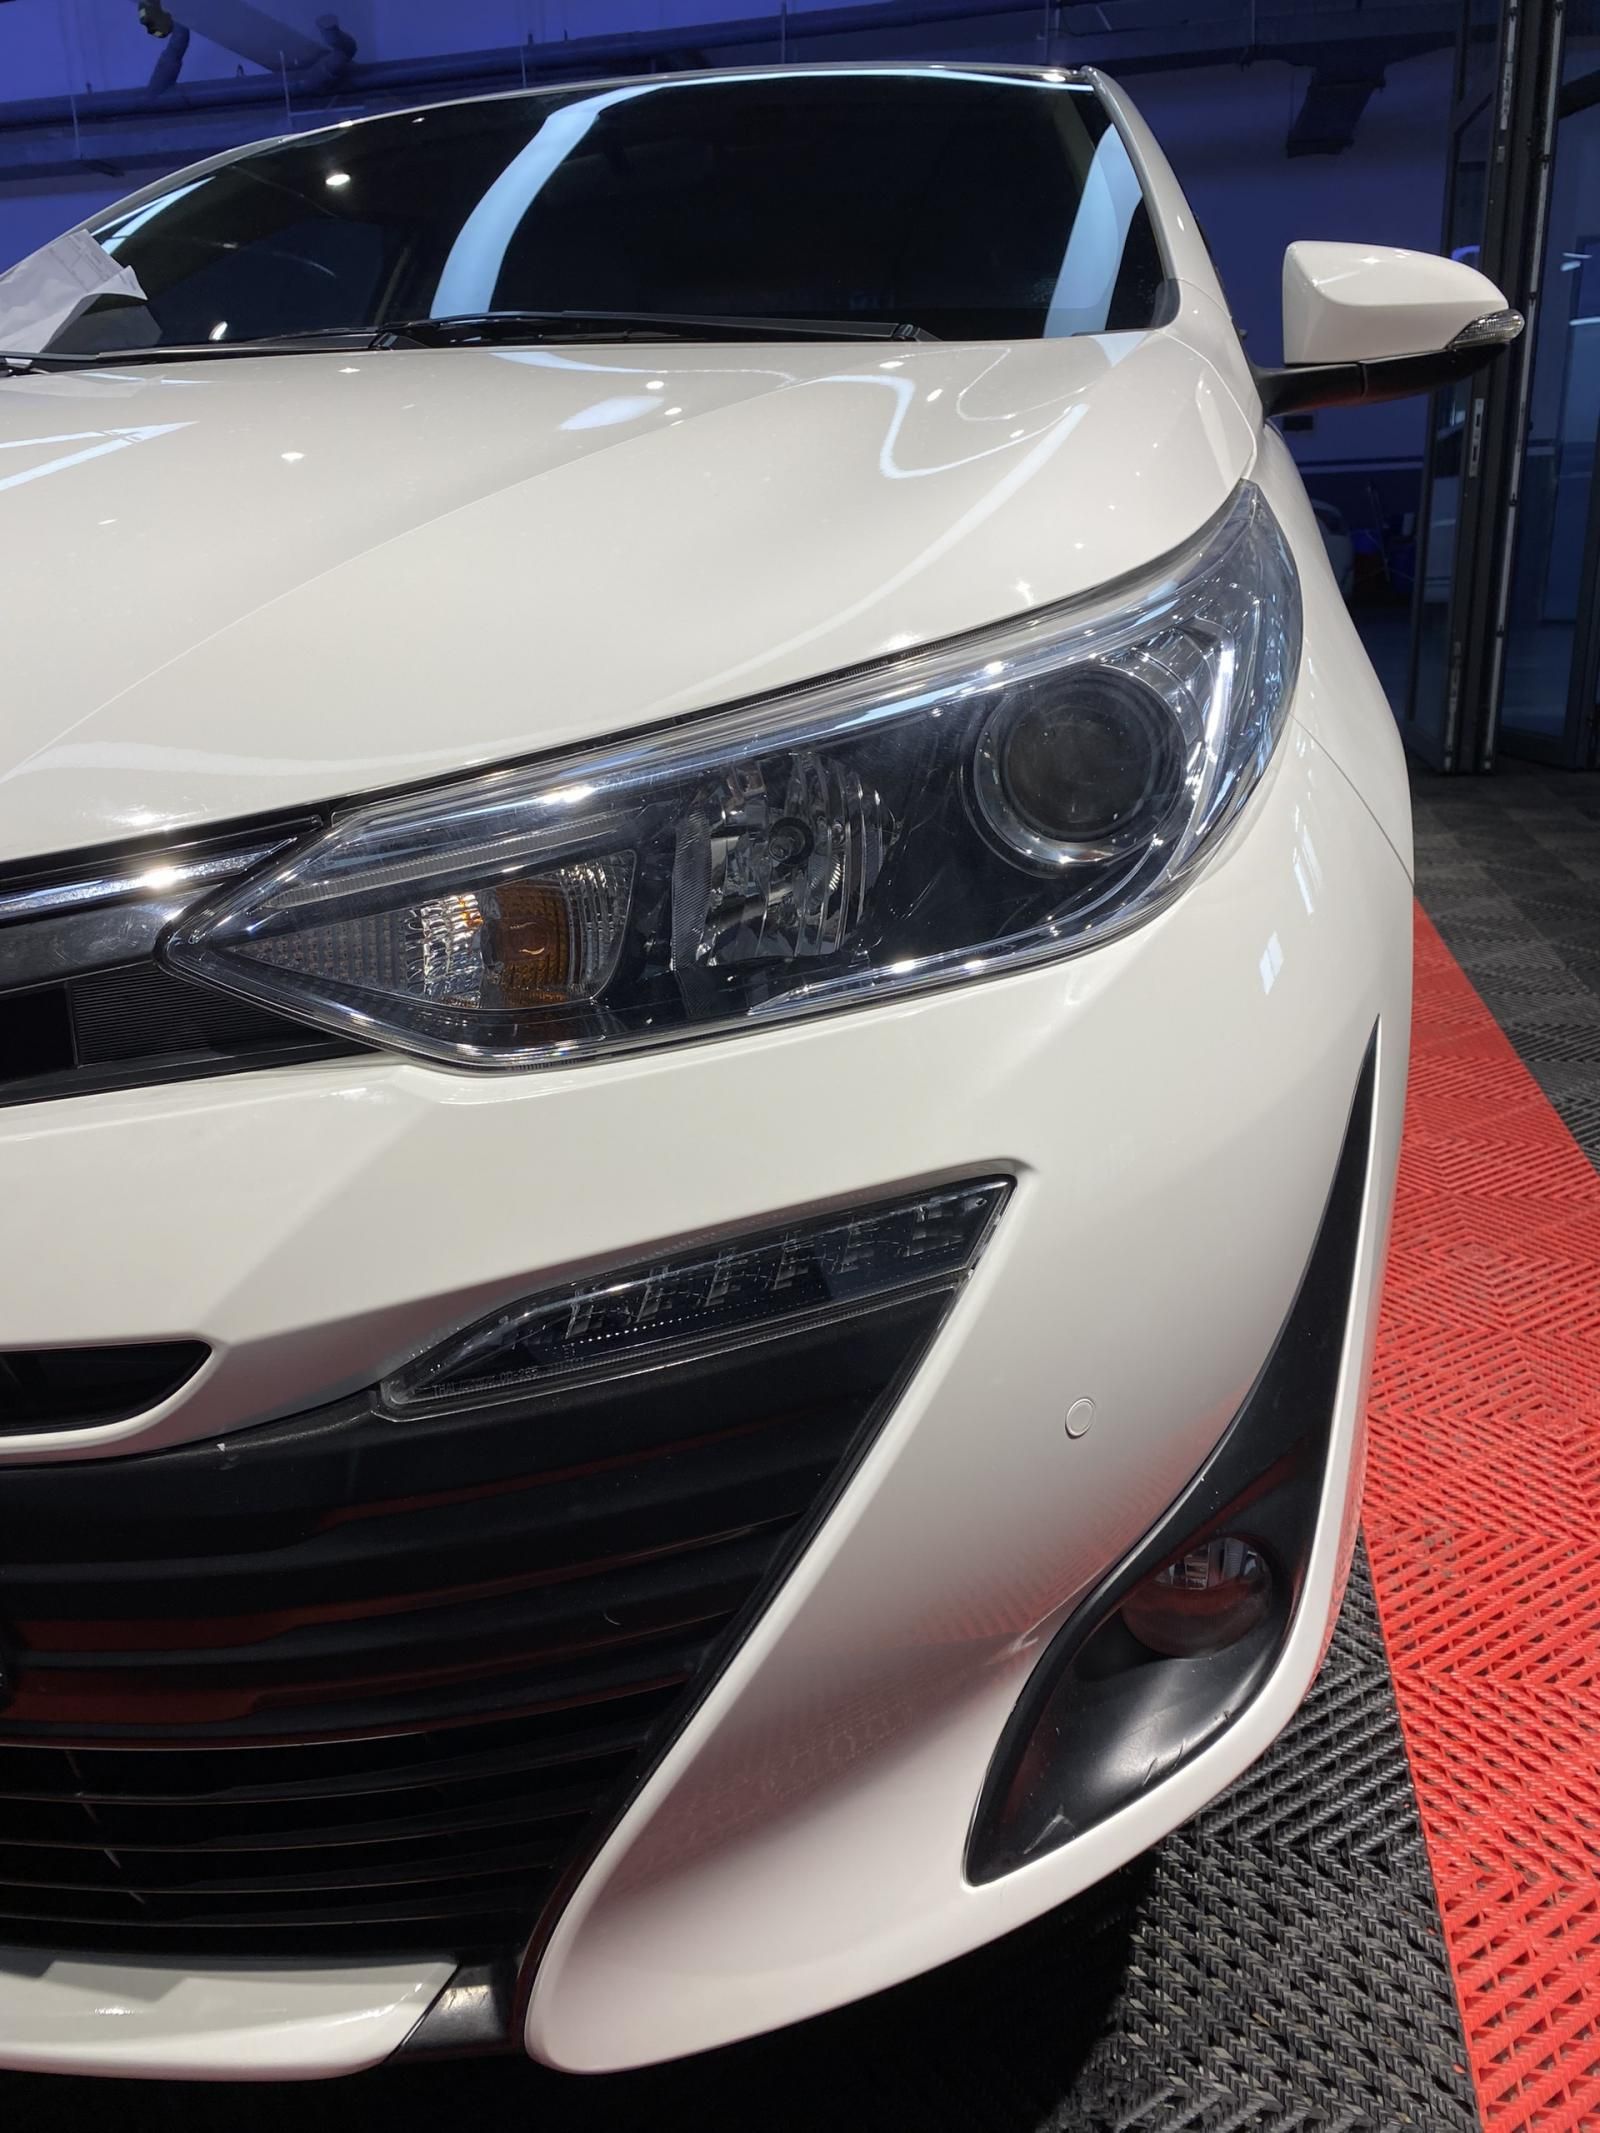 Mua bán xe Toyota Vios giá ưu đãi nhất hiện nay tại Hải Dương 4/2023